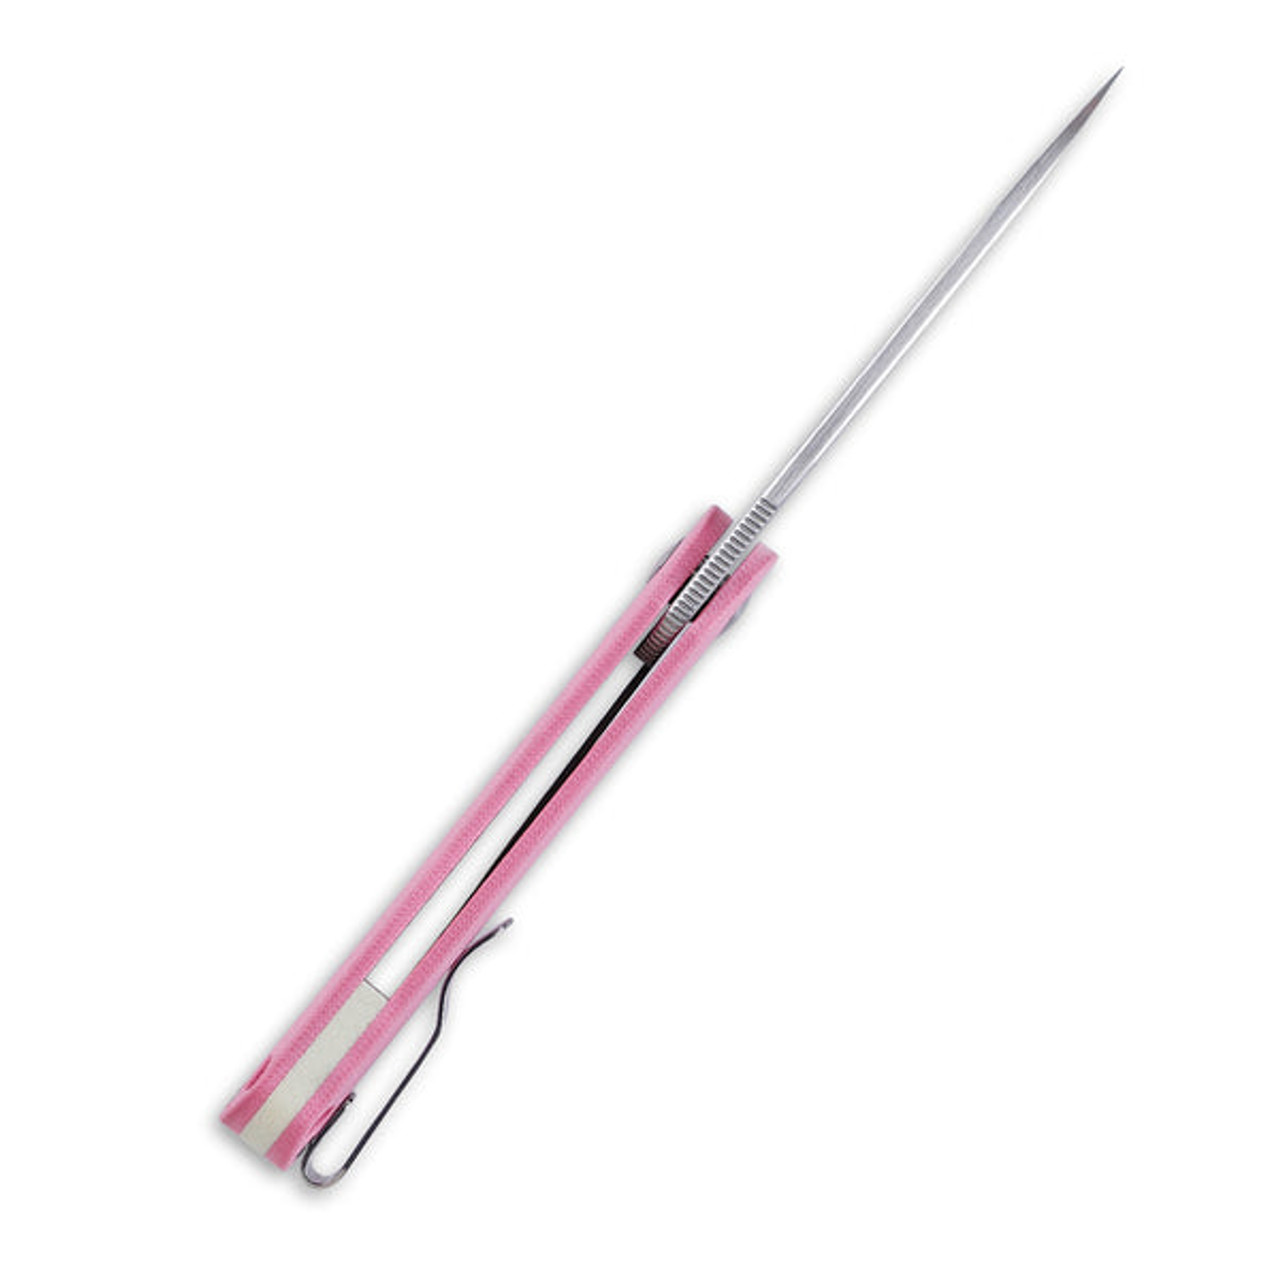 Kizer Lätt Vind Mini (V3567N3) 3" Bohler N690 Satin Spear Point Plain Blade, Pink G-10 Handle